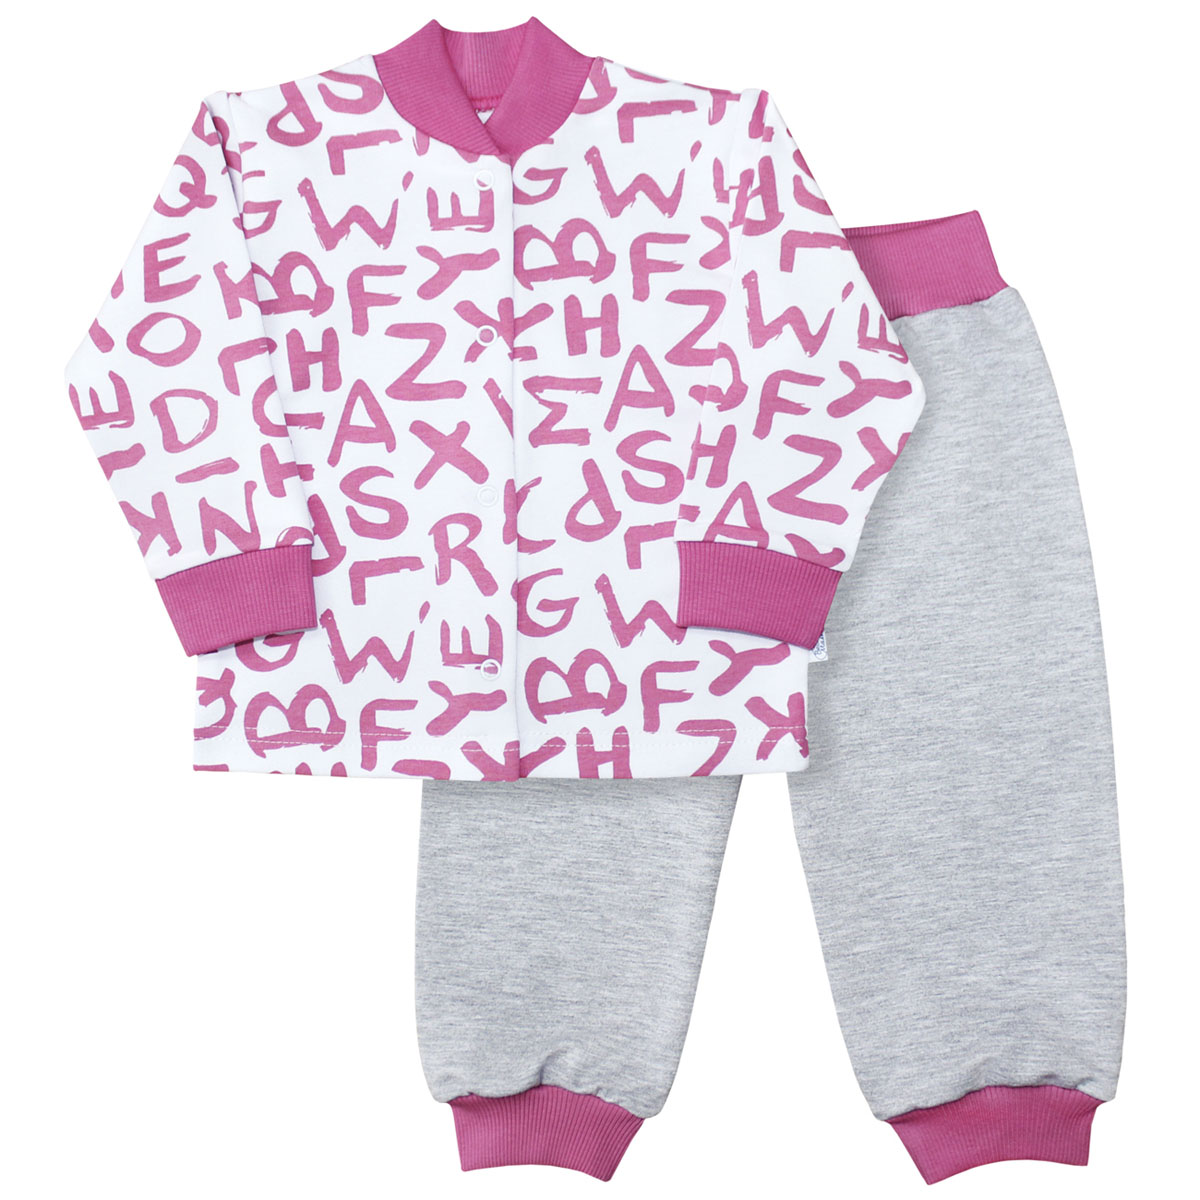 Комплект для девочки Веселый малыш Буквы: кофточка, брюки, цвет: розовый. 22136/142/бу-розовый. Размер 92